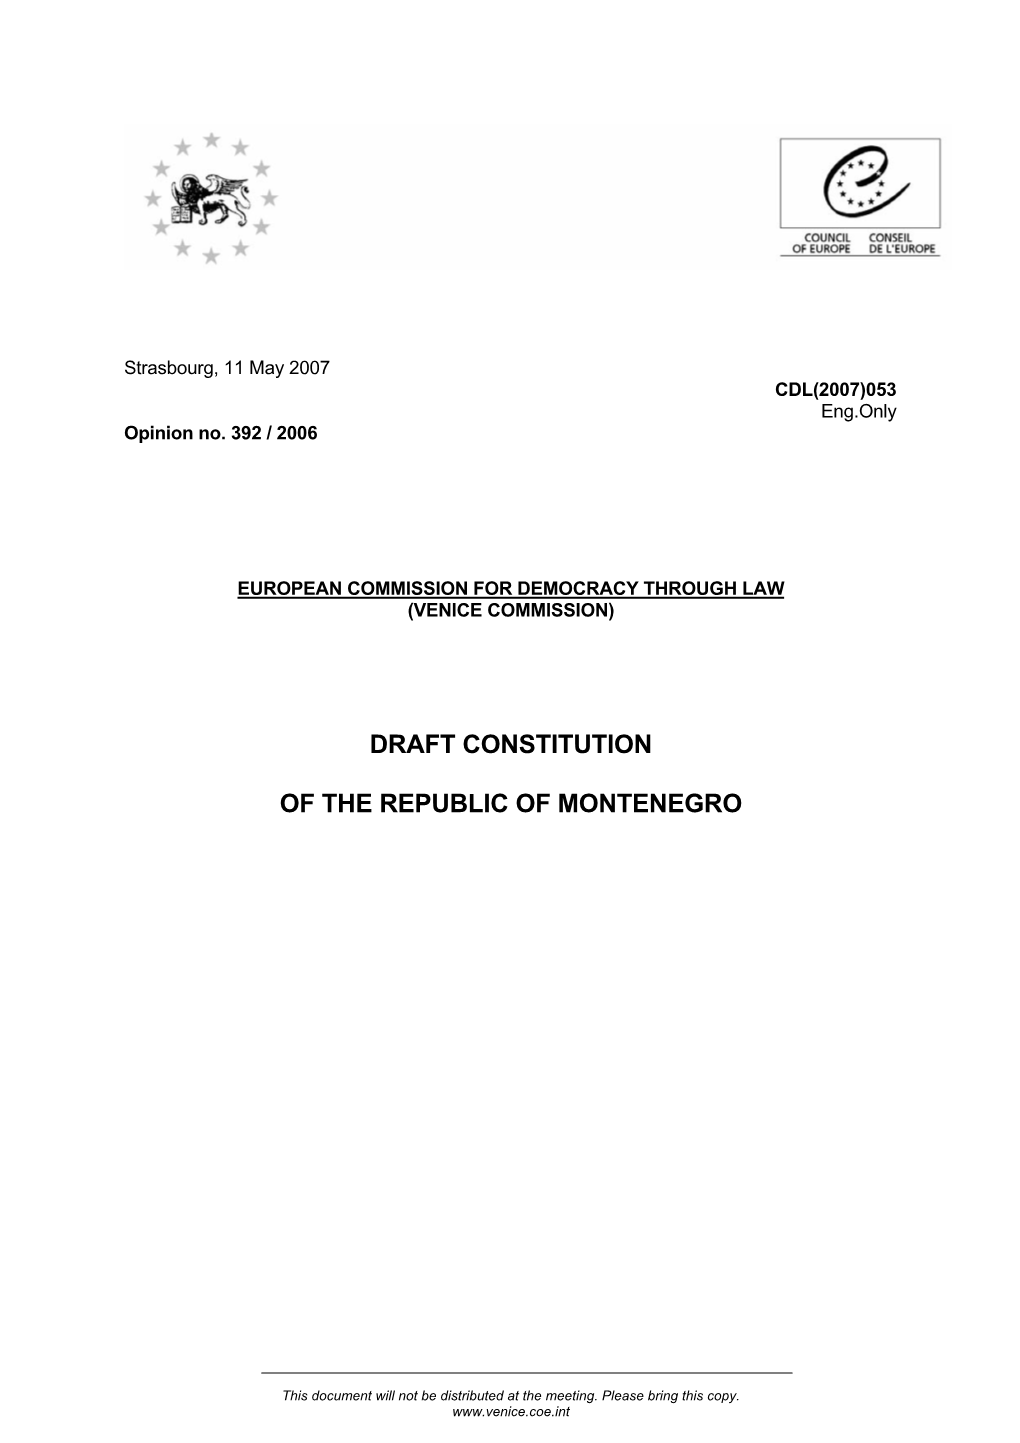 Draft Constitution of the Republic of Montenegro